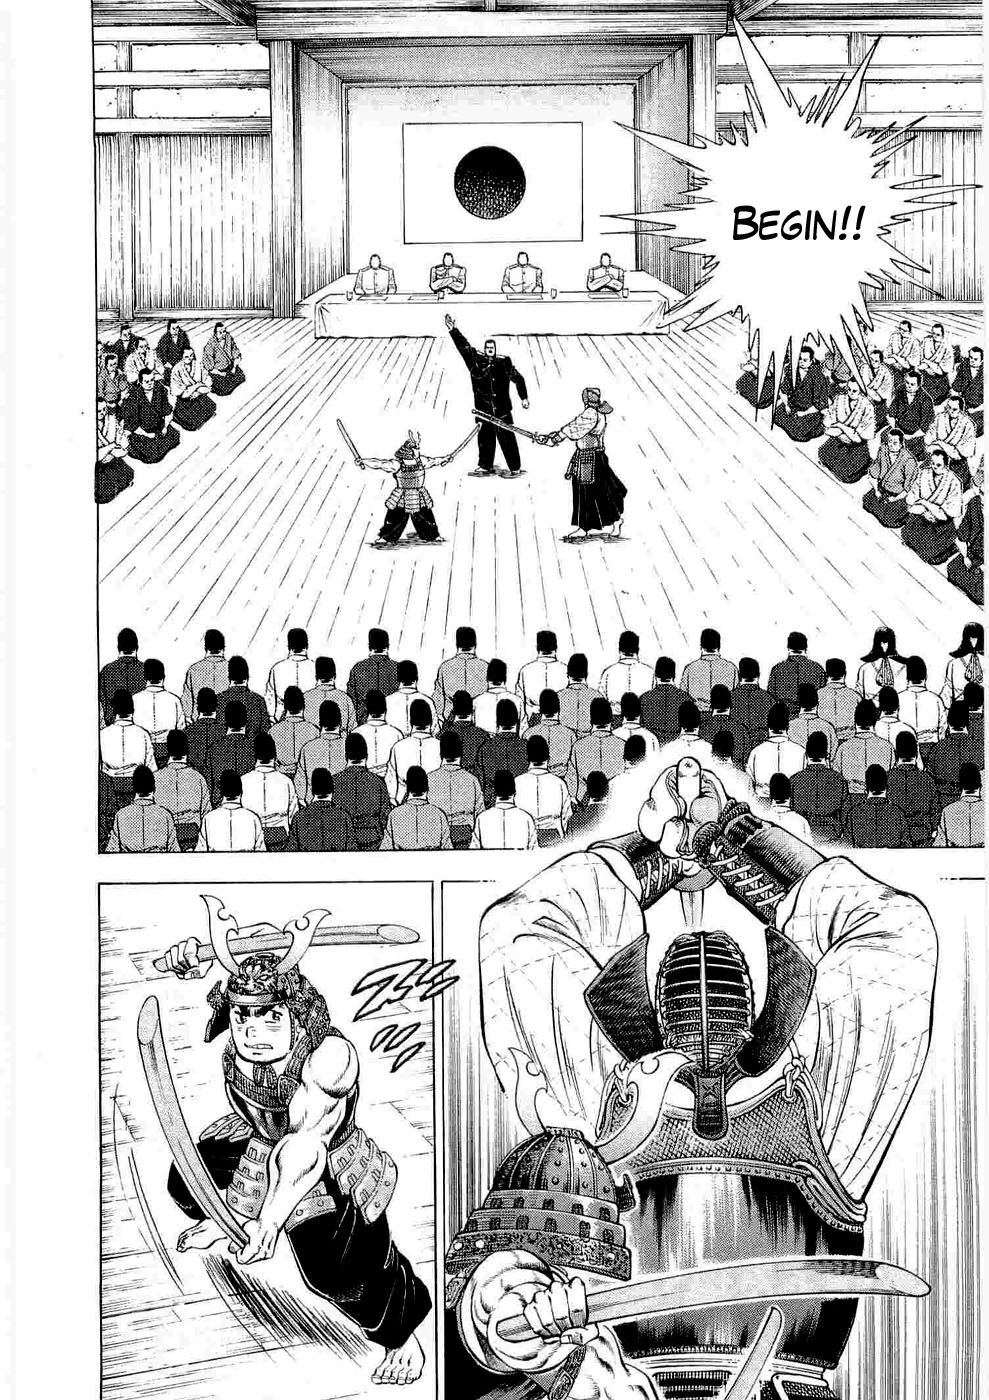 Tenkamusou Edajima Heihachi Den Vol.1 Ch.5